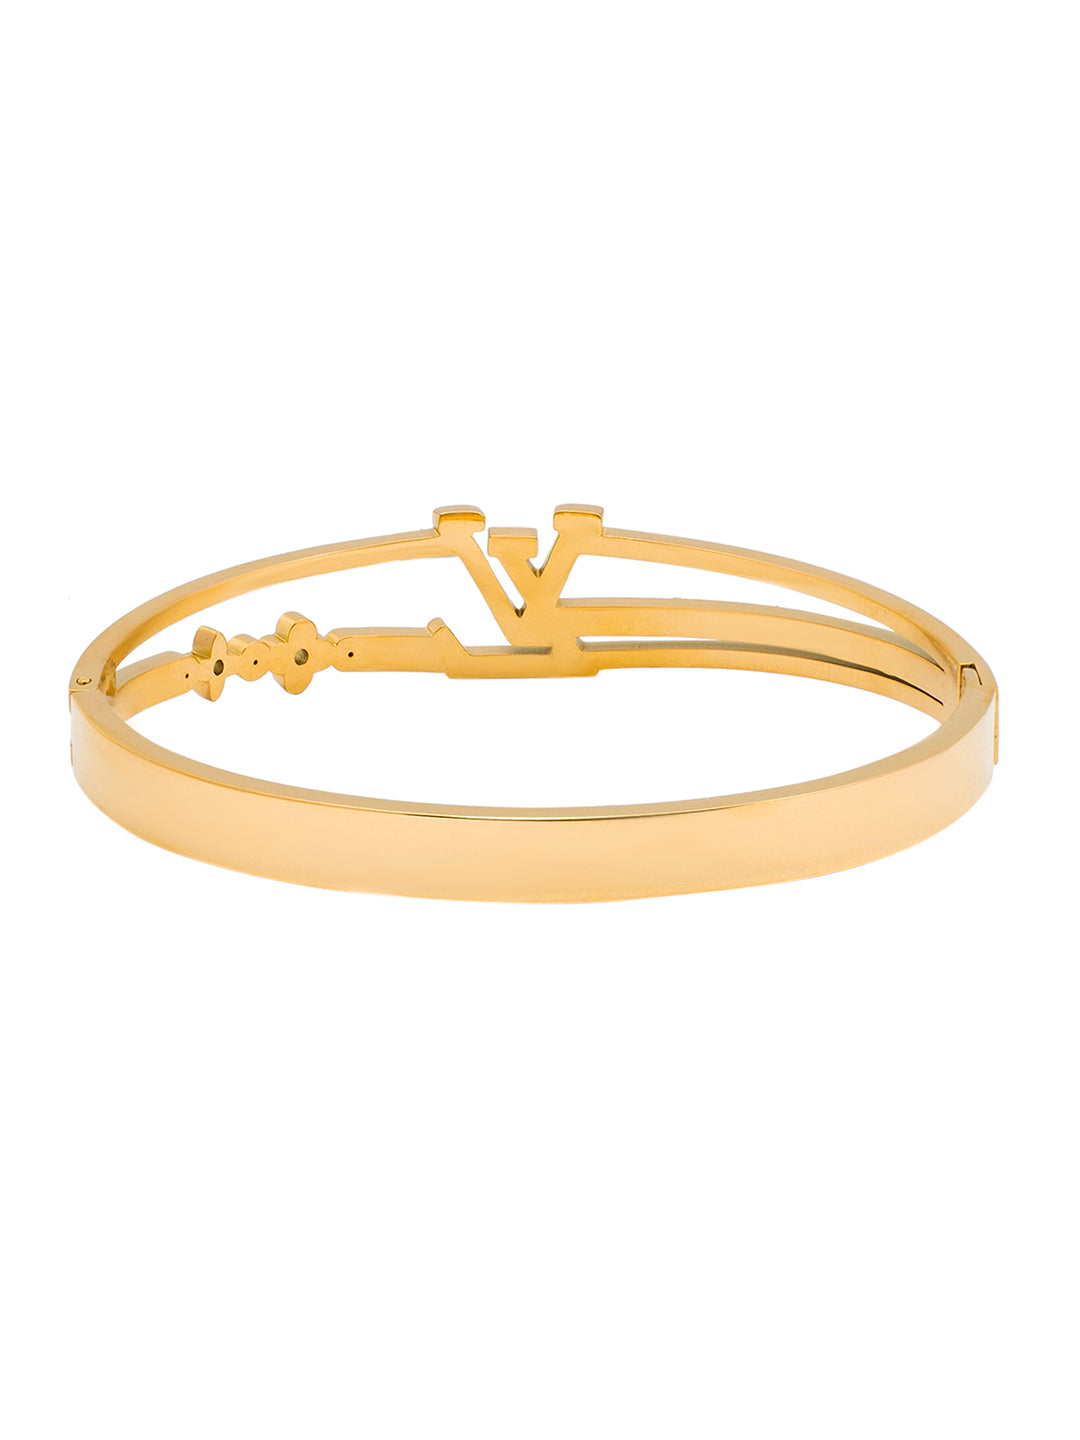 Louis Vuitton - Empreinte Bangle Yellow Gold - Gold - Unisex - Size: S - Luxury